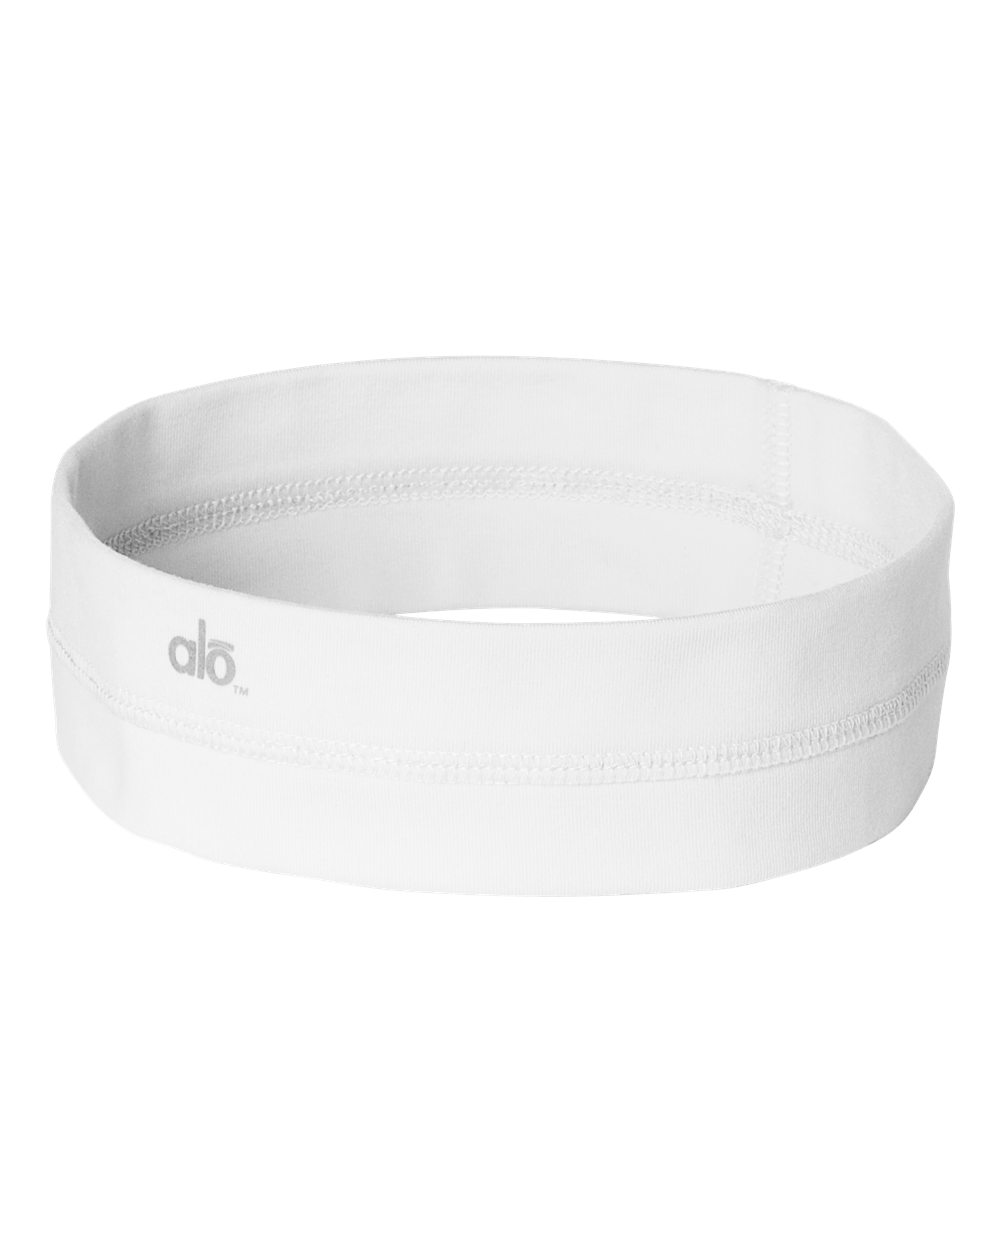 alo - Ladies' Headband